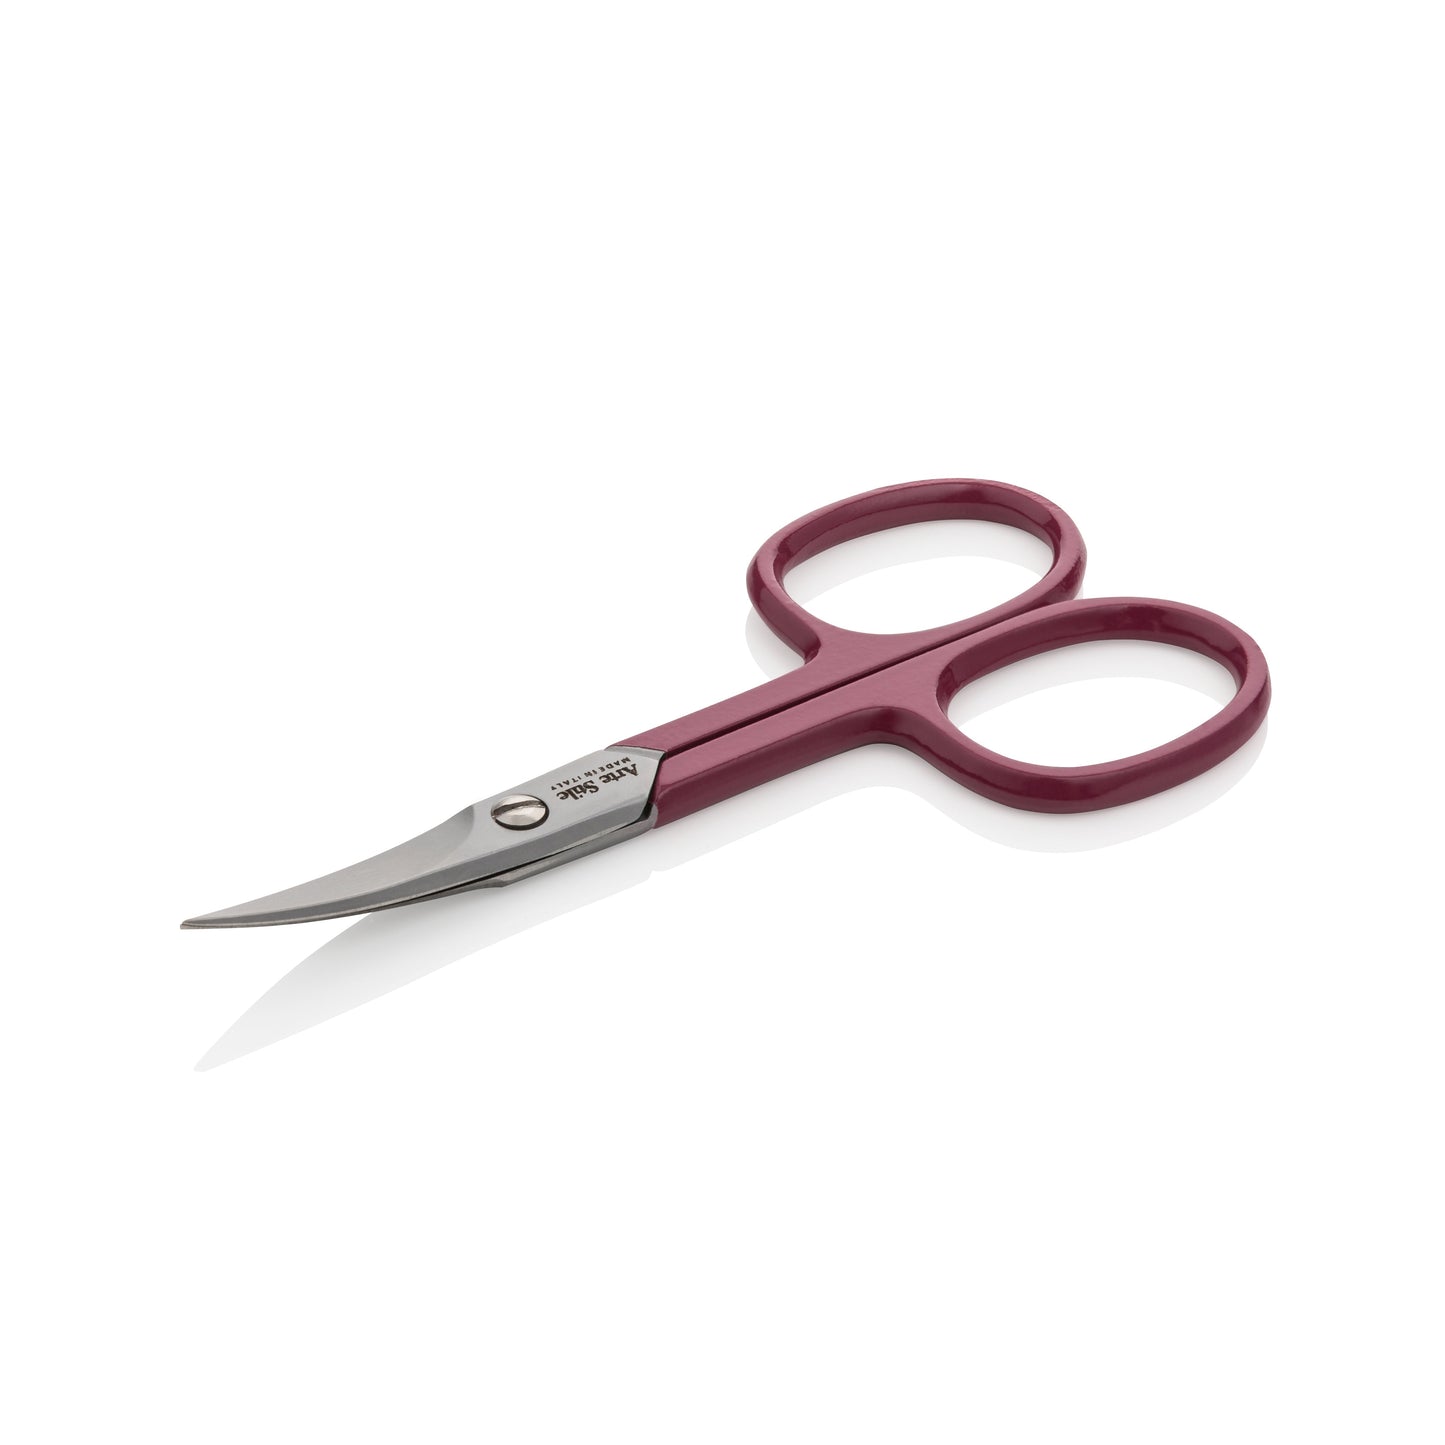 Slant Tip Tweezers + Nail Scissors in Barolo